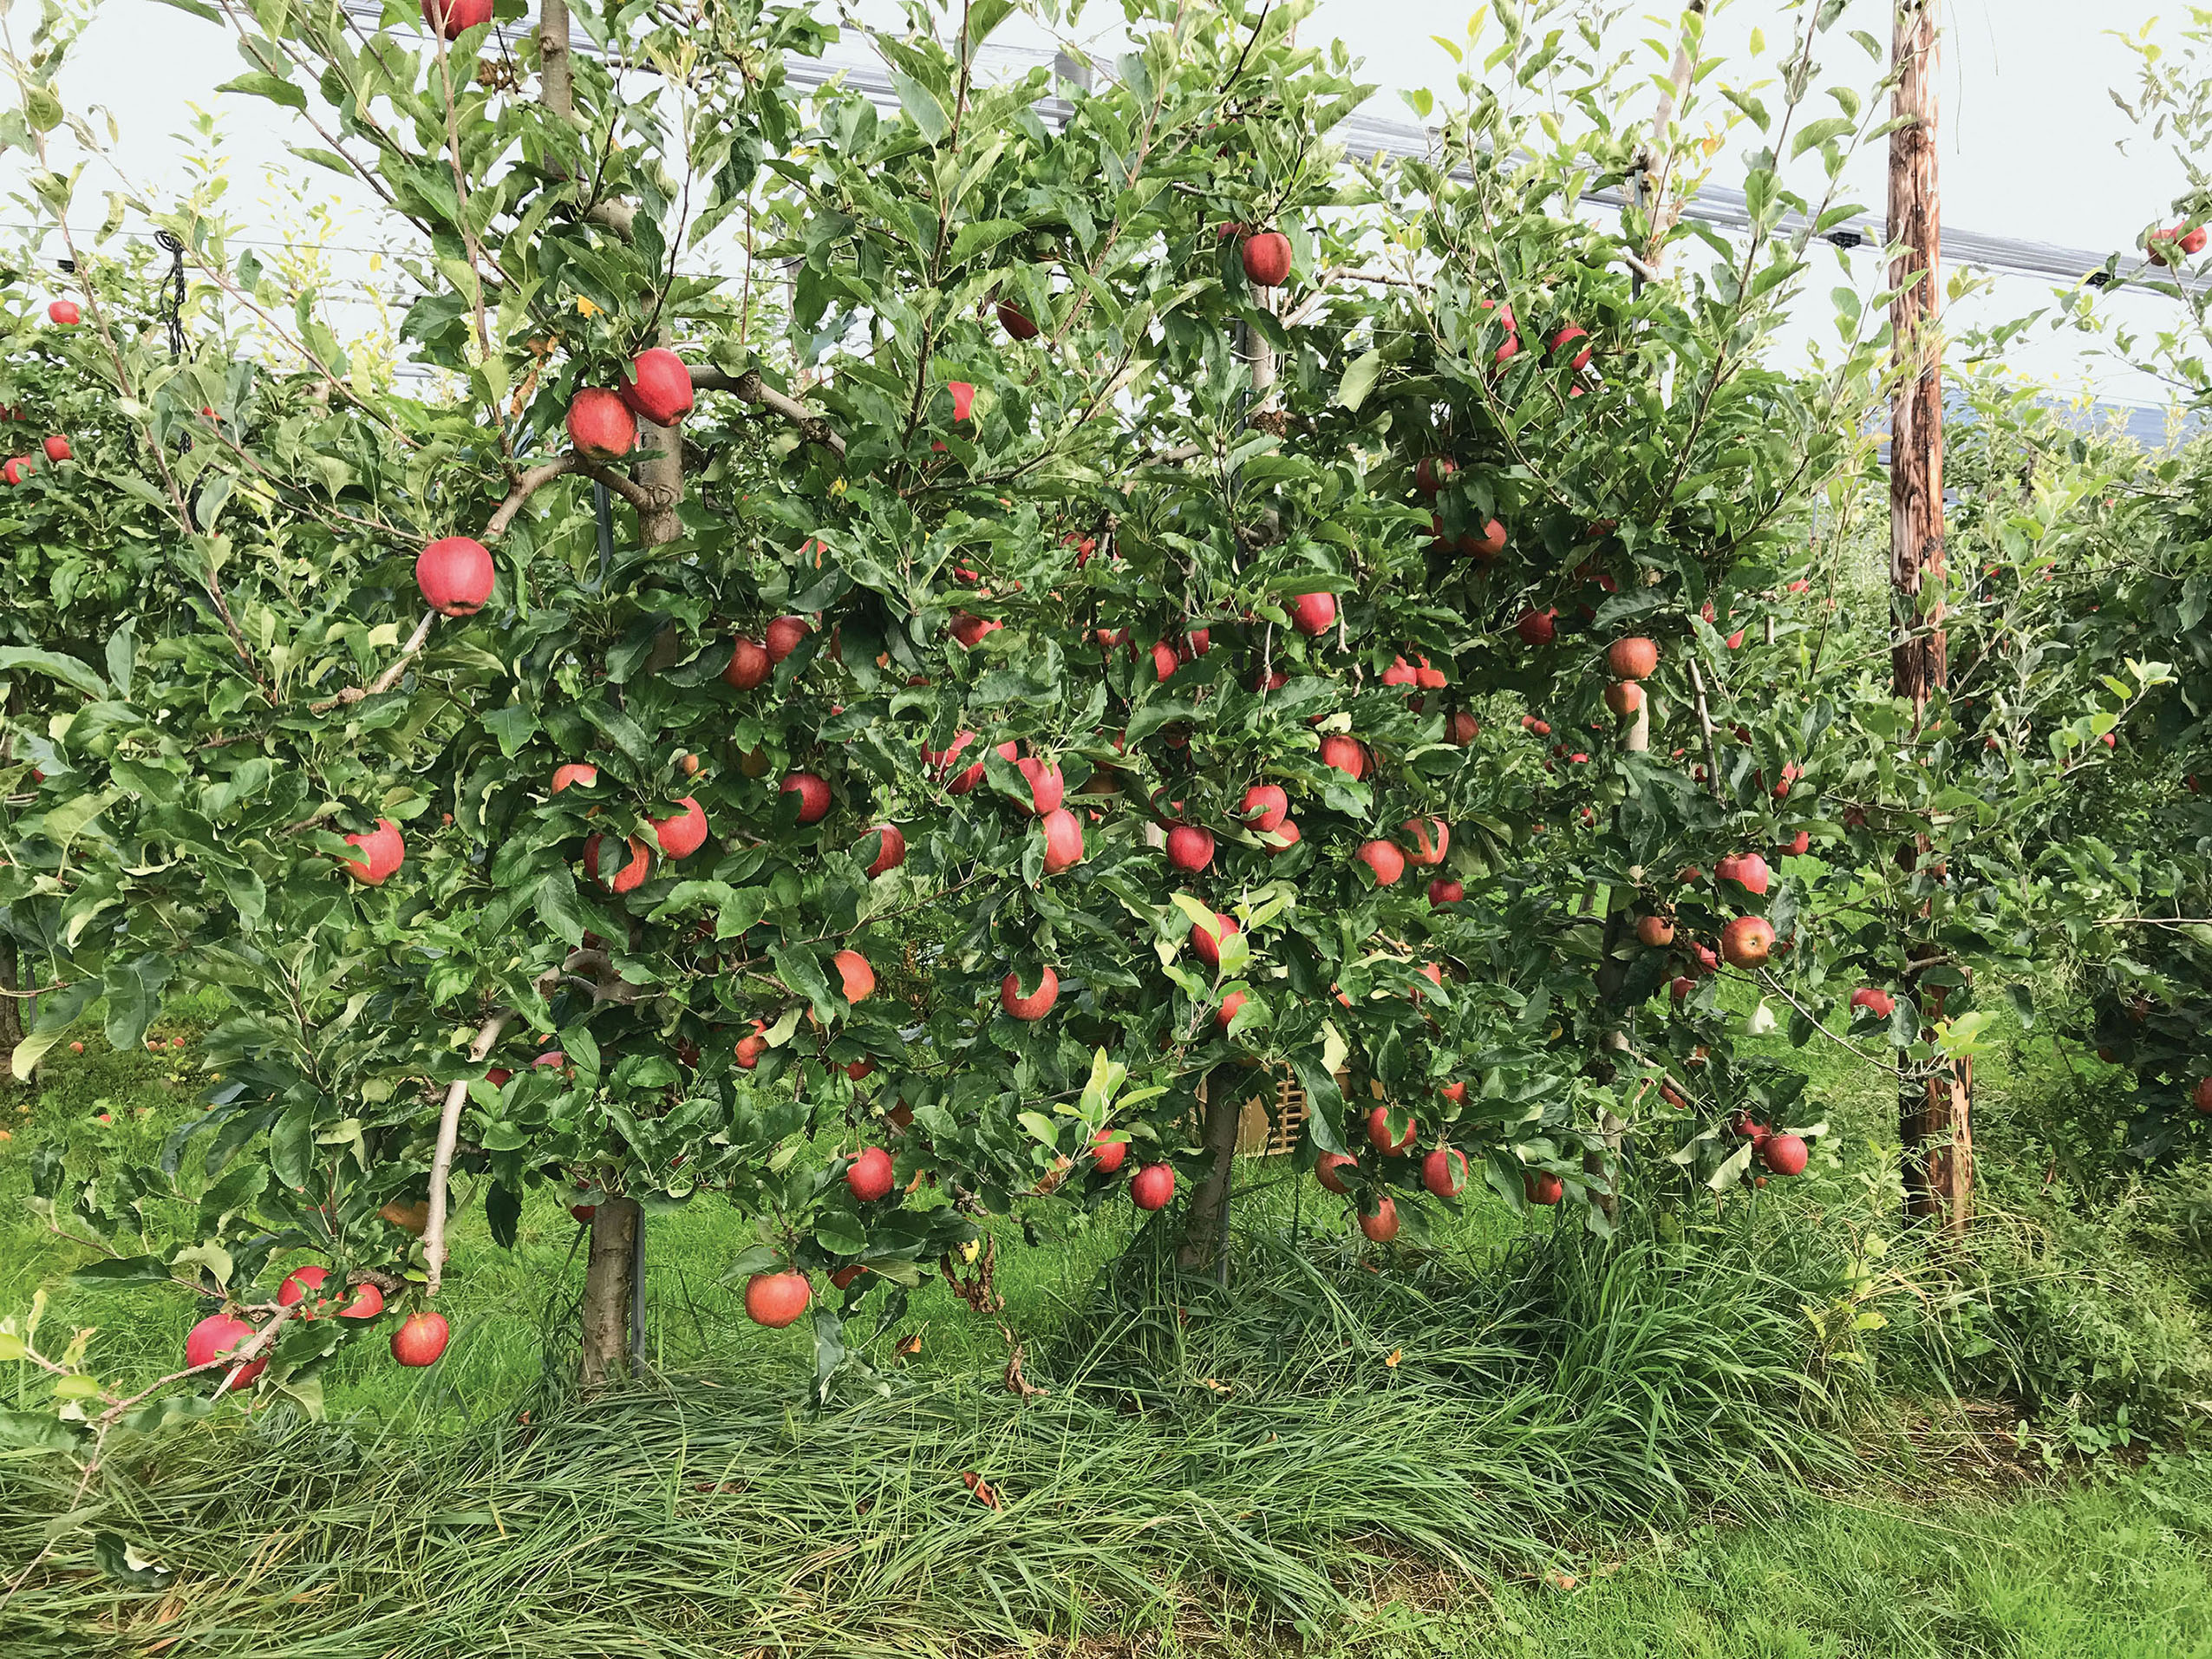 Développement de stratégies durables pour lutter contre les adventices en arboriculture fruitière